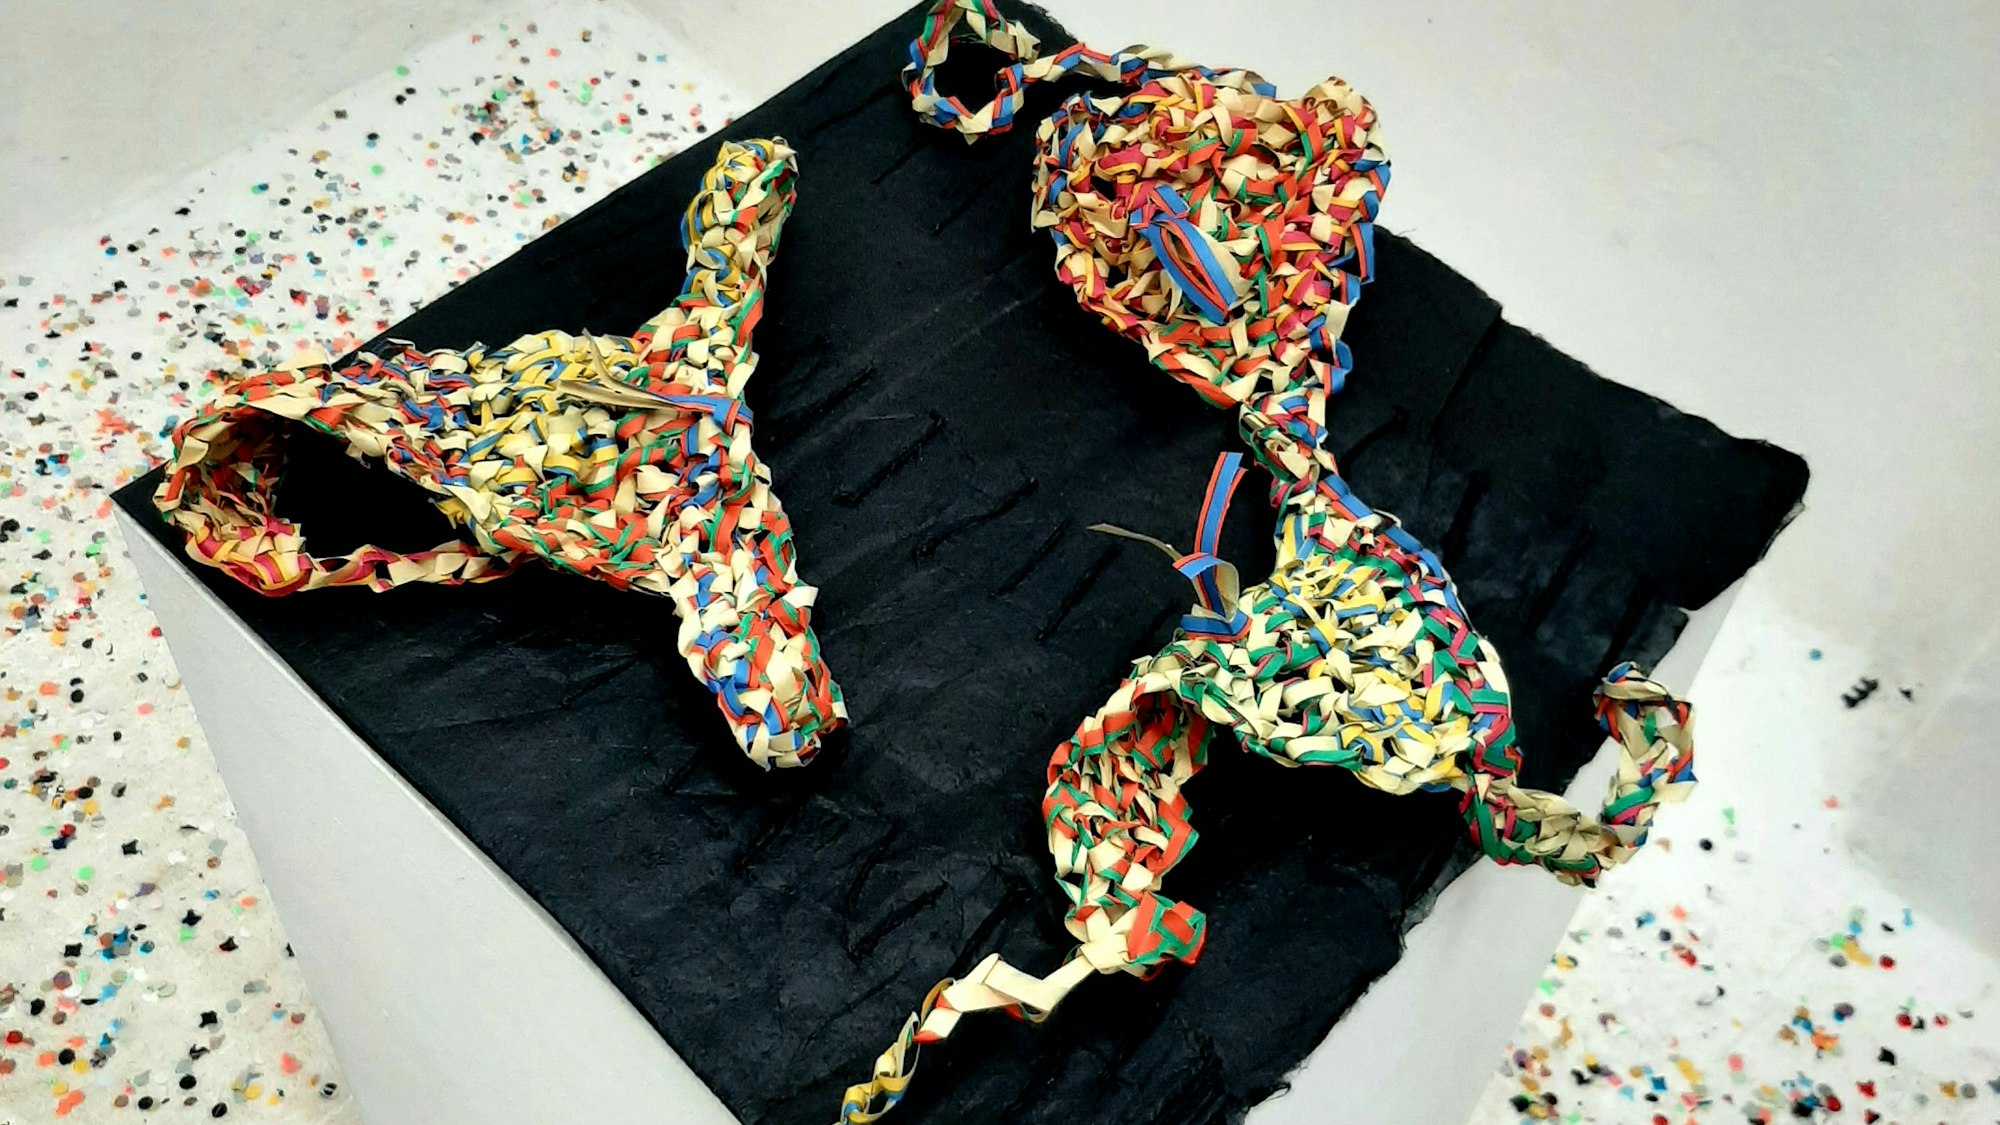 Heiderose Birkenstock-Kotalla strickte aus Luftschlangen Karnevalstextilien aus dem Rheinland und – siehe diesen Bikini – Brasilien.